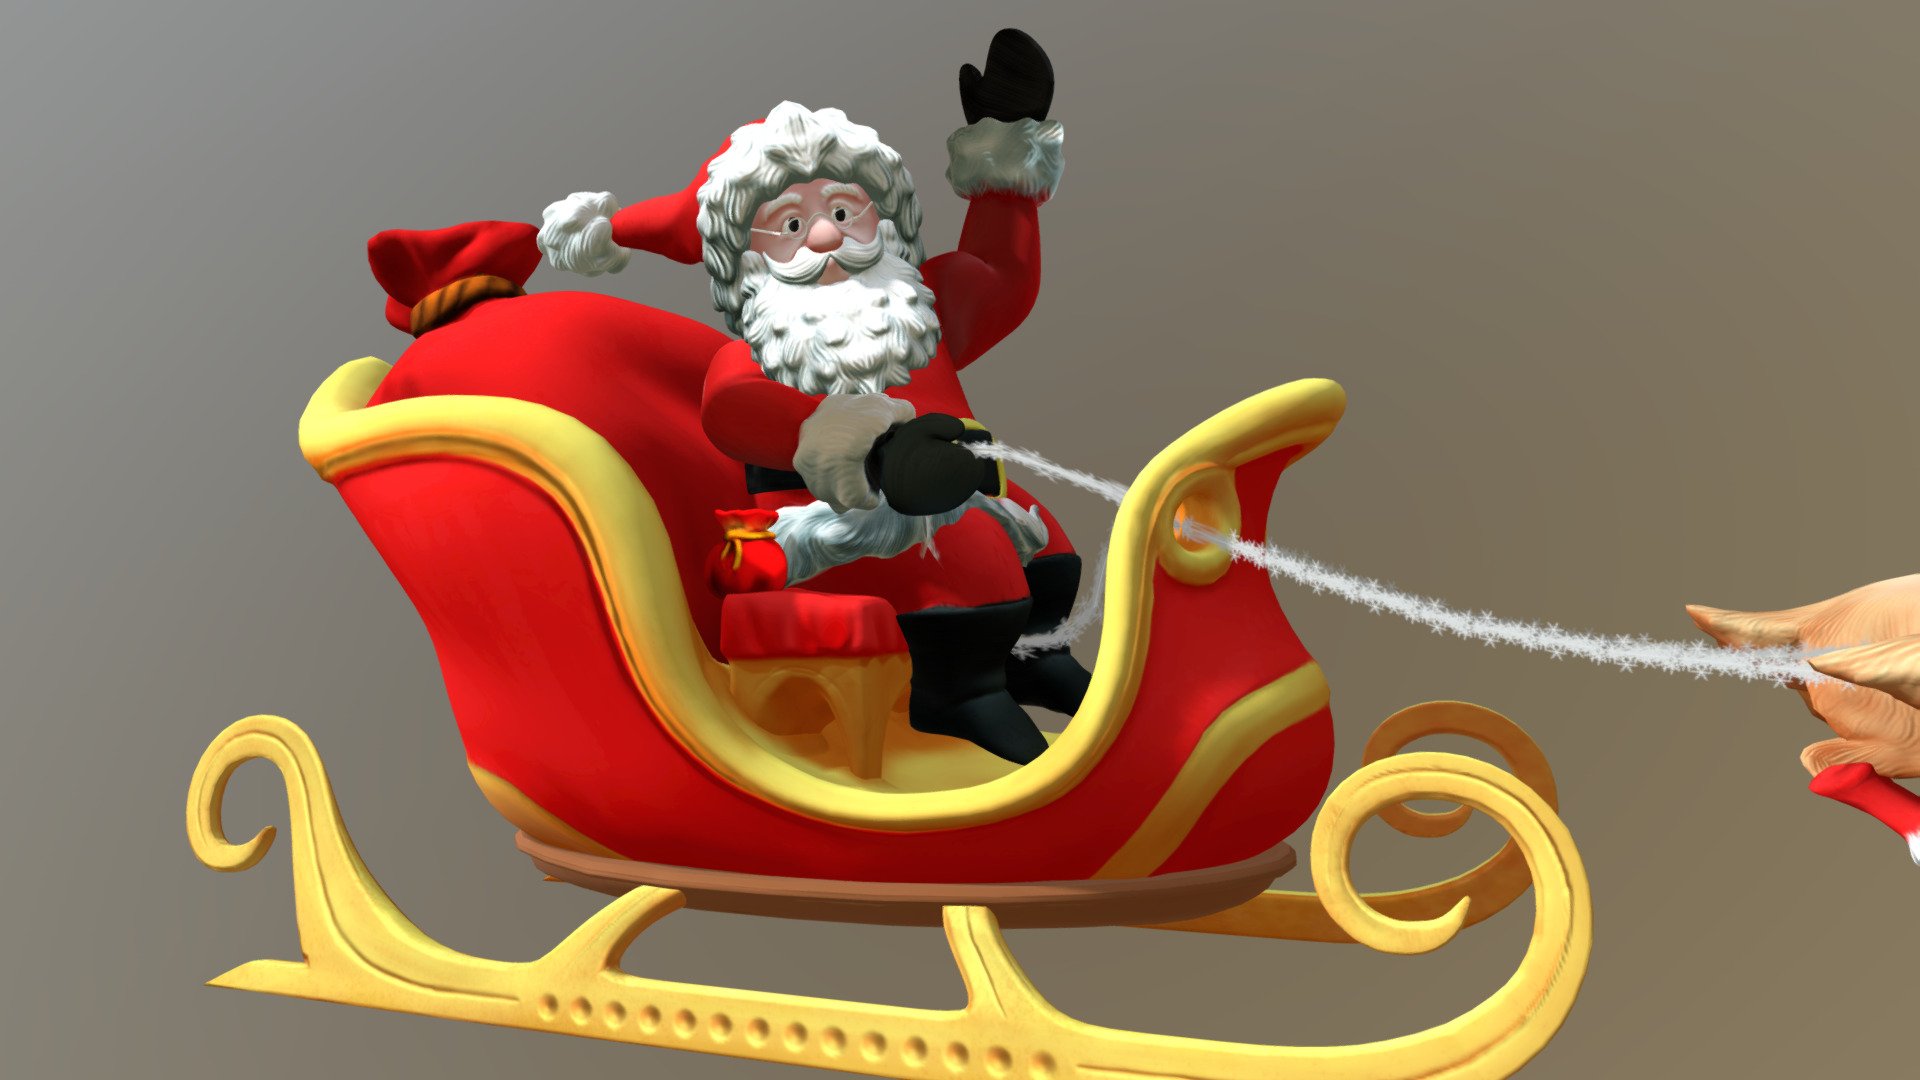 Santa Claus - 3D model by Jhon (@.jhonatas) 3d model